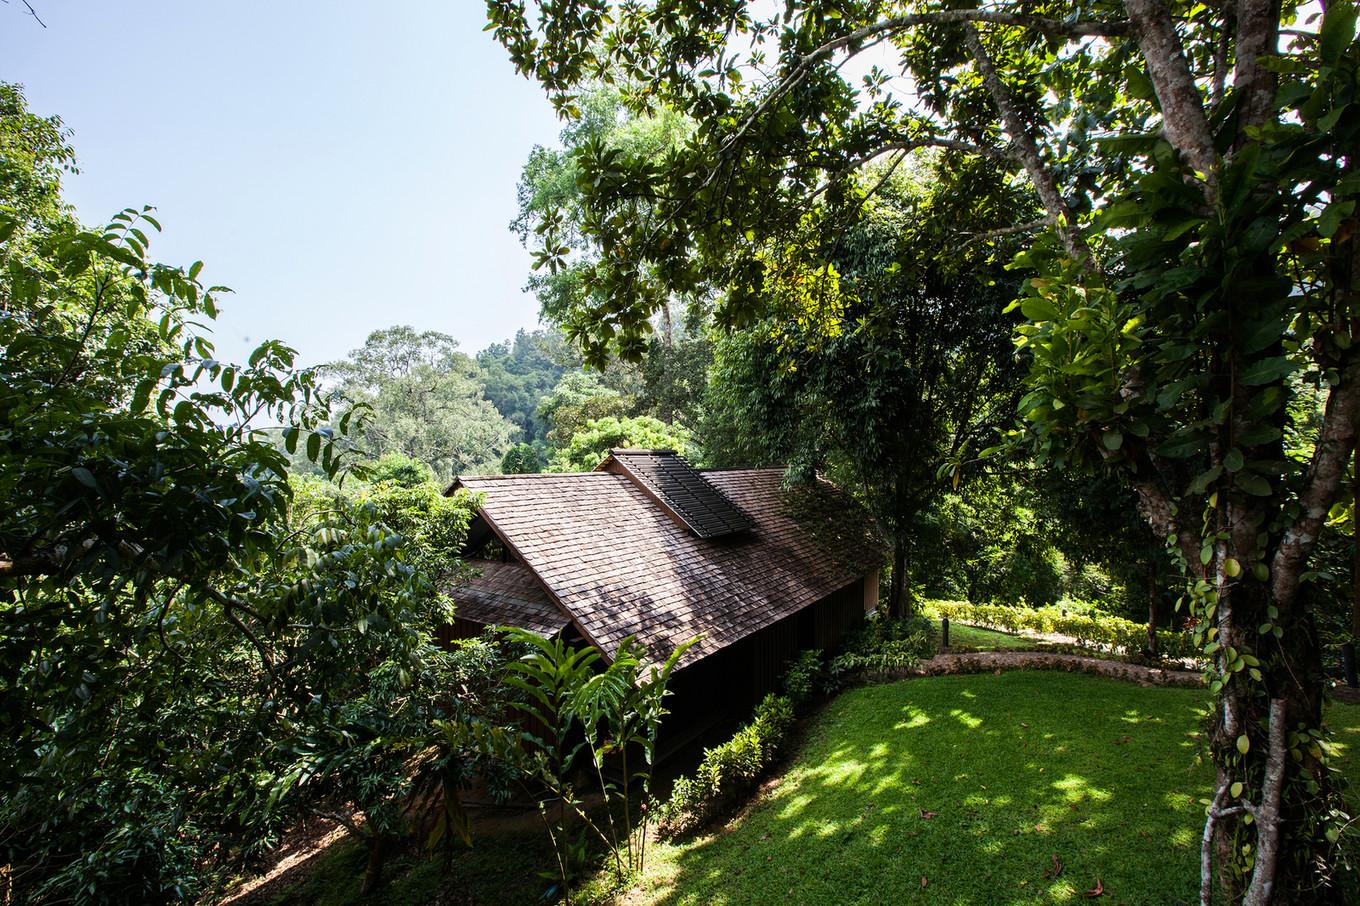 Интеграция с природой: Hill Lodge — отель в джунглях Таиланда (ФОТО)